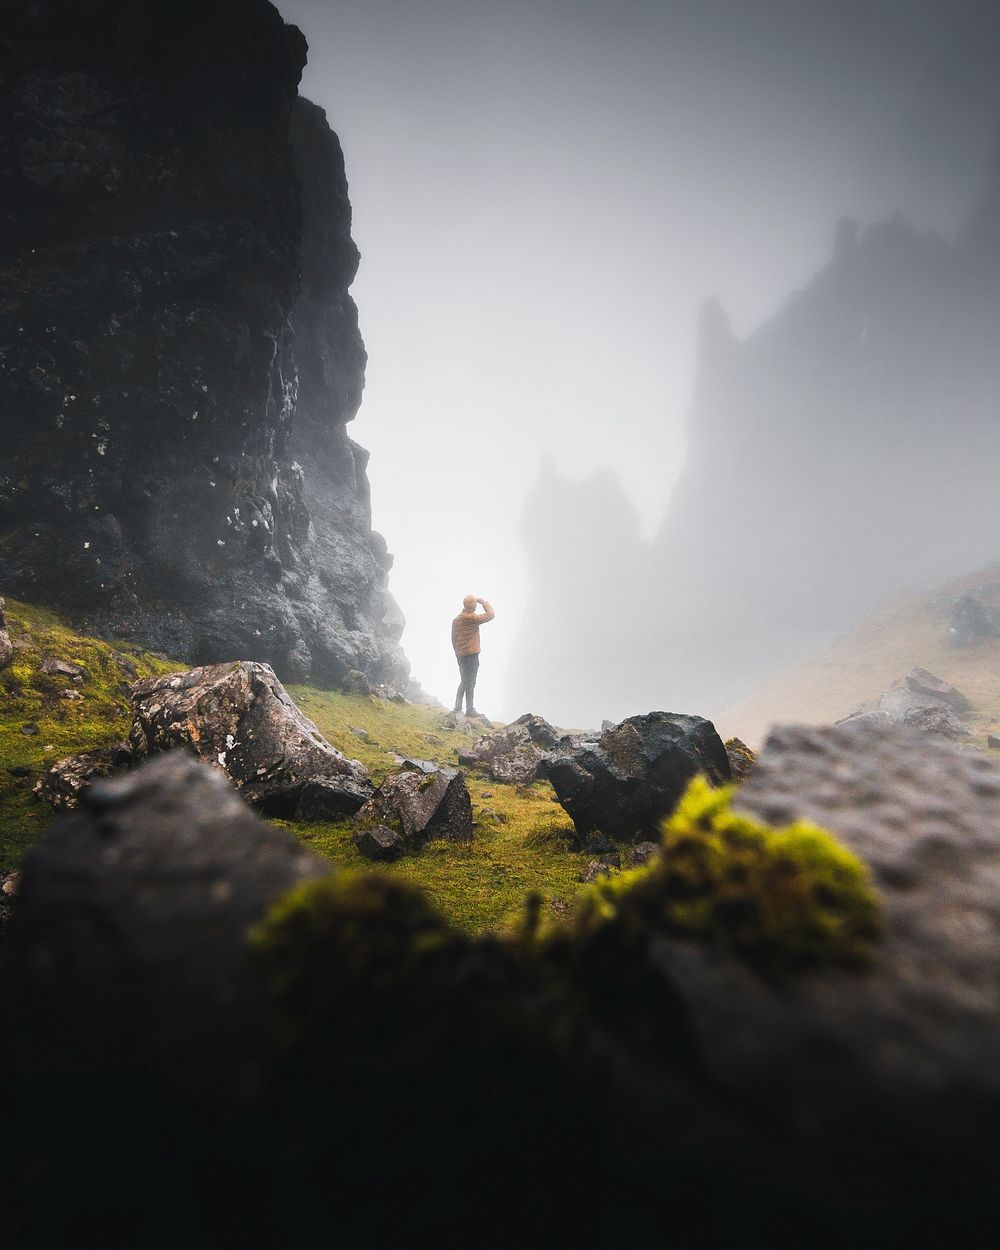 Man trekking in the misty Old Man of Storr, Scotland